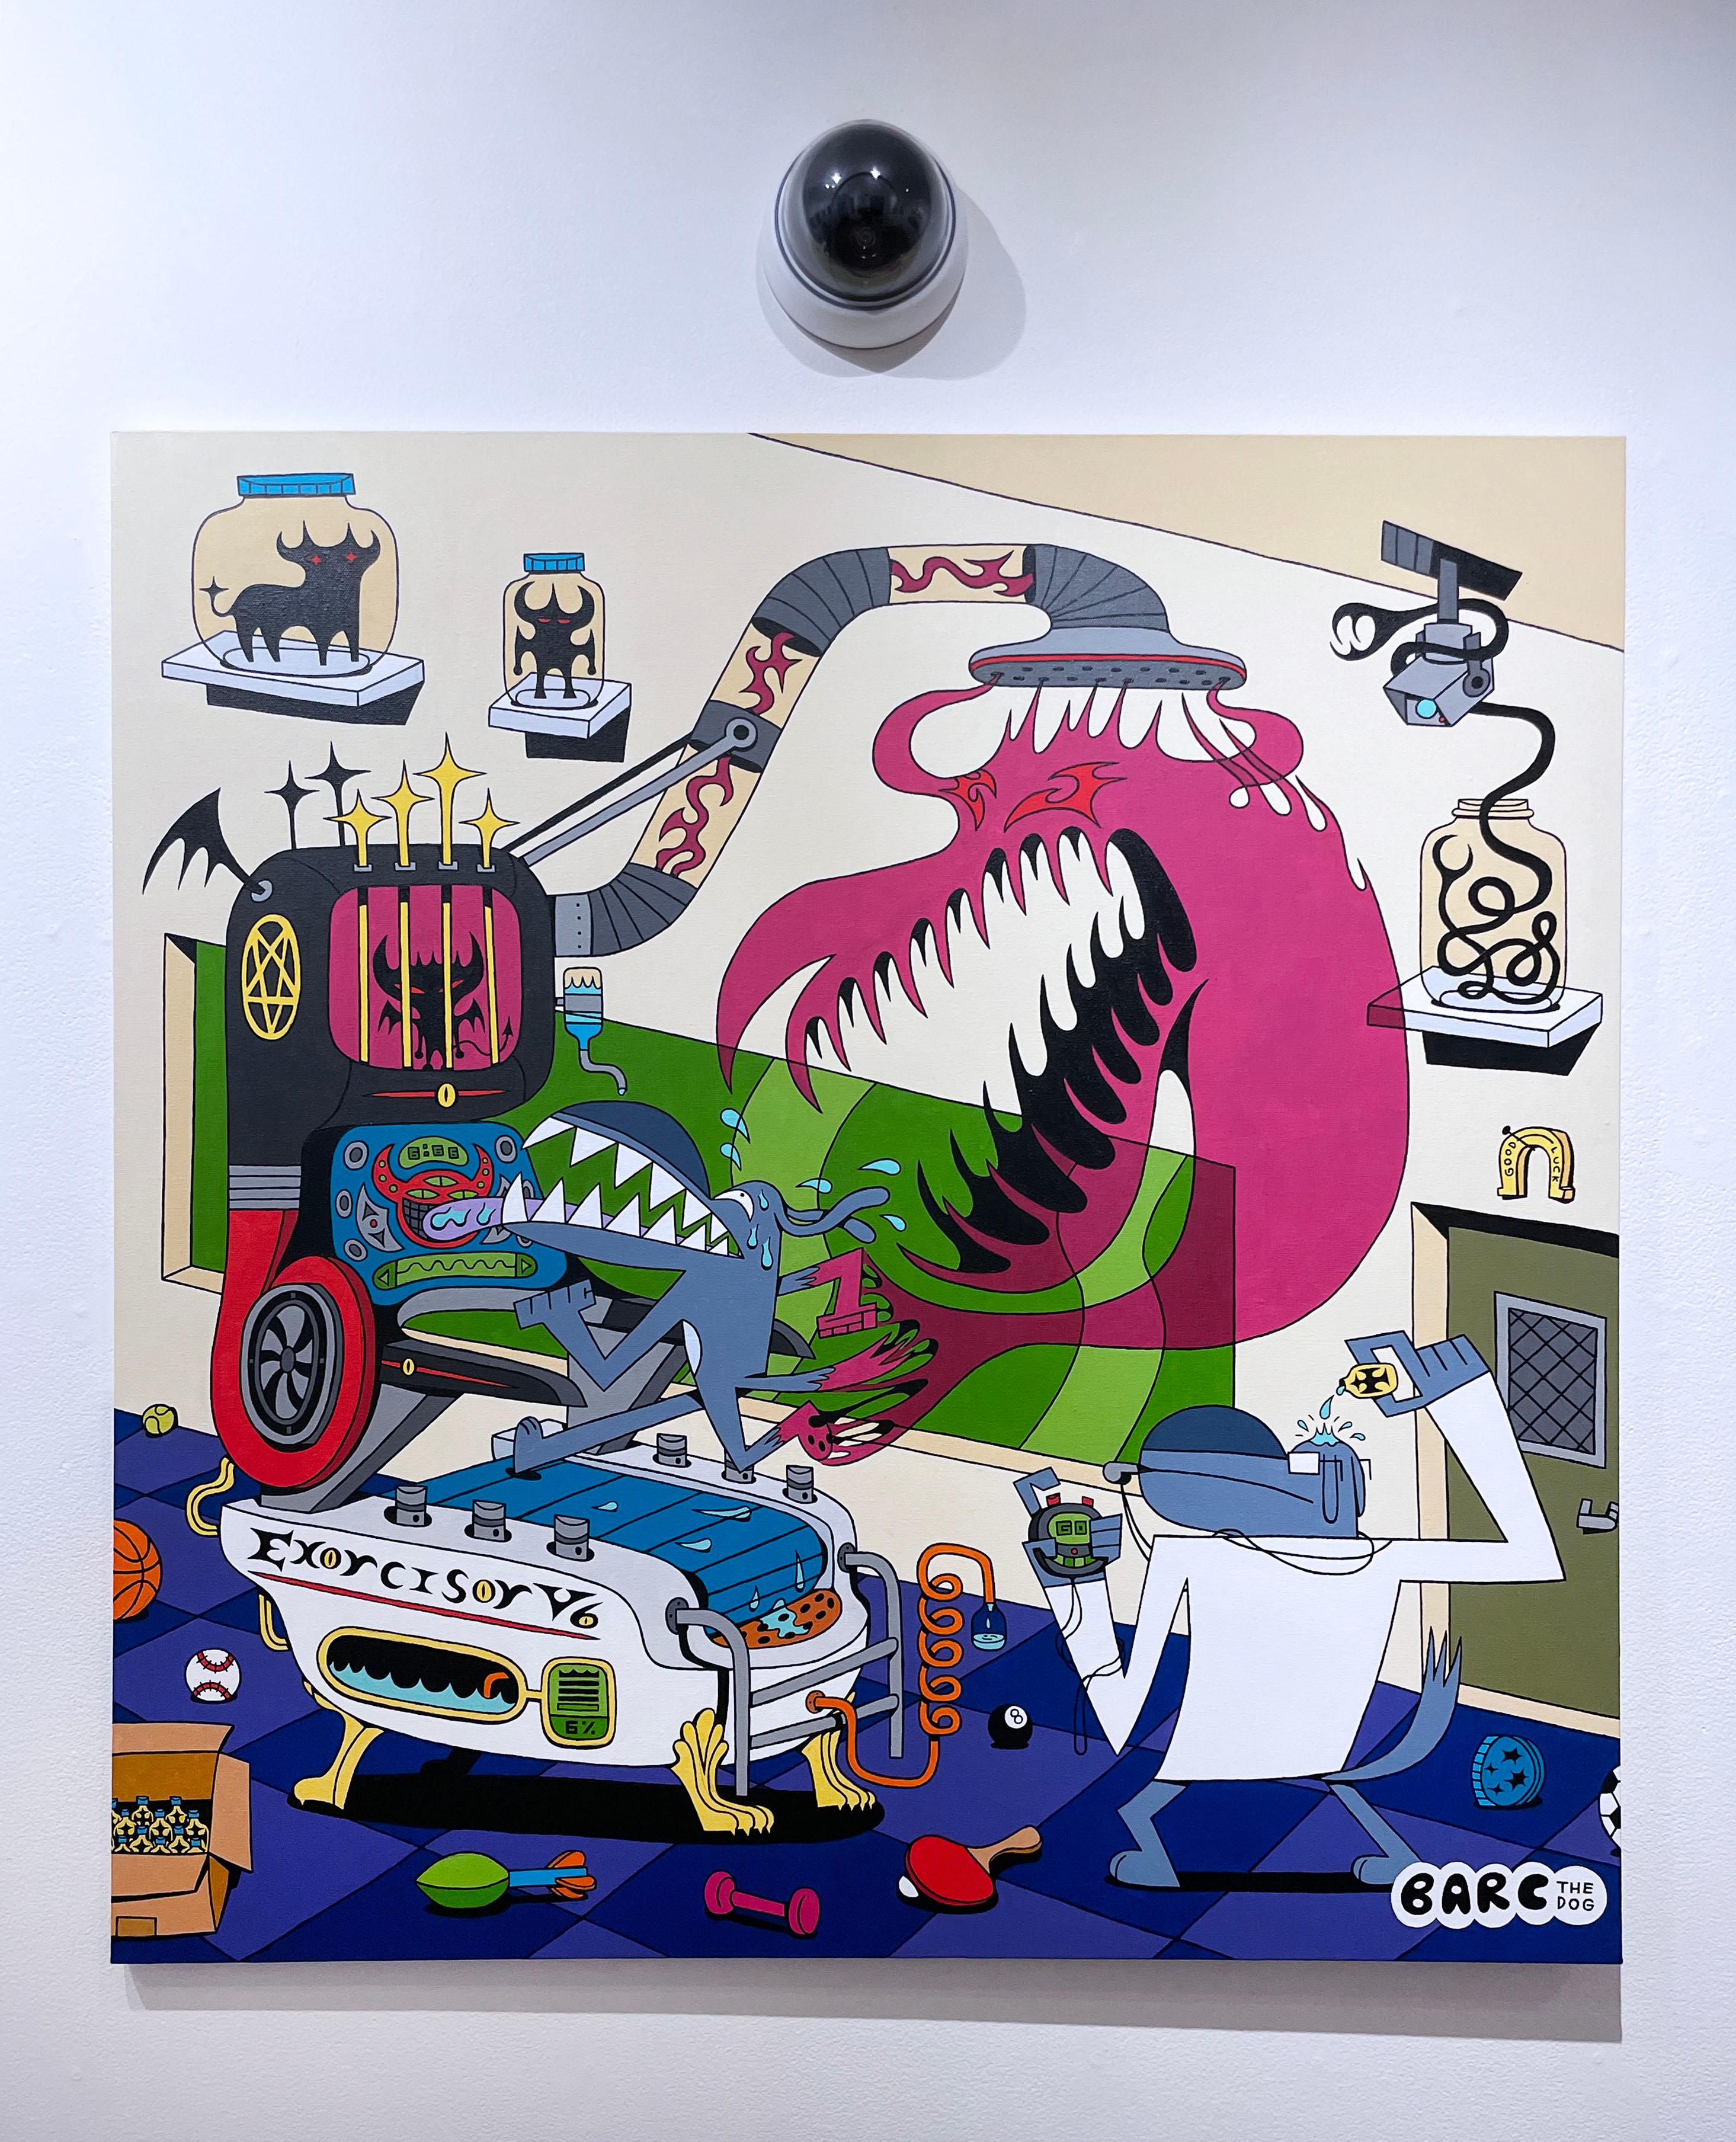 Exorcisor V6 von BARC, der Hund, Comic-Buchstil, Wissenschaftslabor, Maschinen (Pop-Art), Painting, von BARC the dog